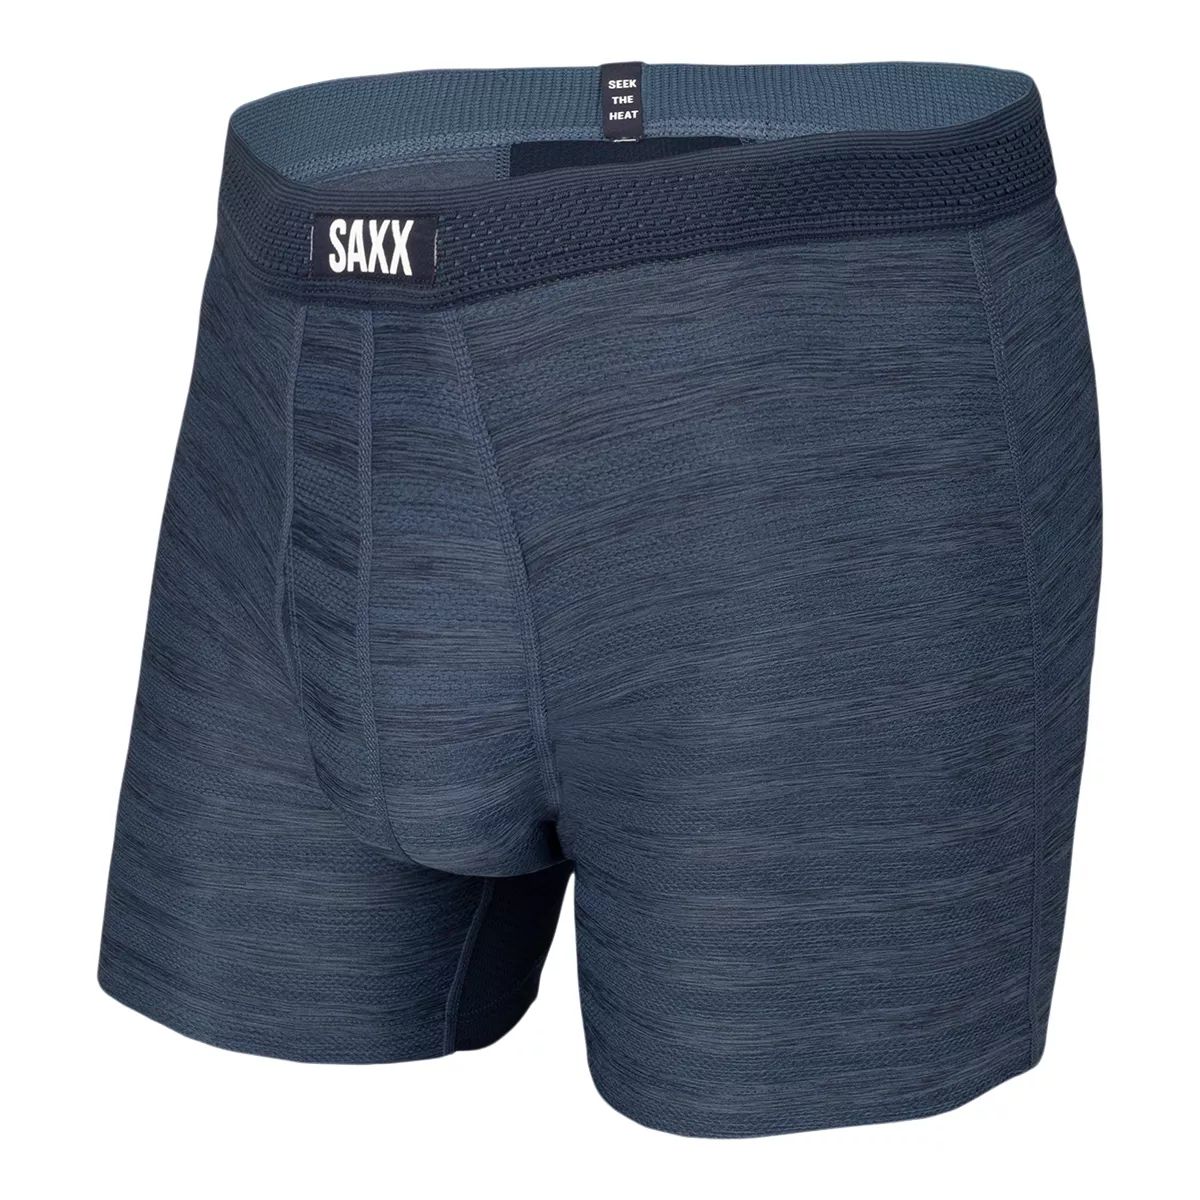 Saxx Droptemp Hotshot Stripe Men's Boxer Brief  Workout Underwear Quick-Dry